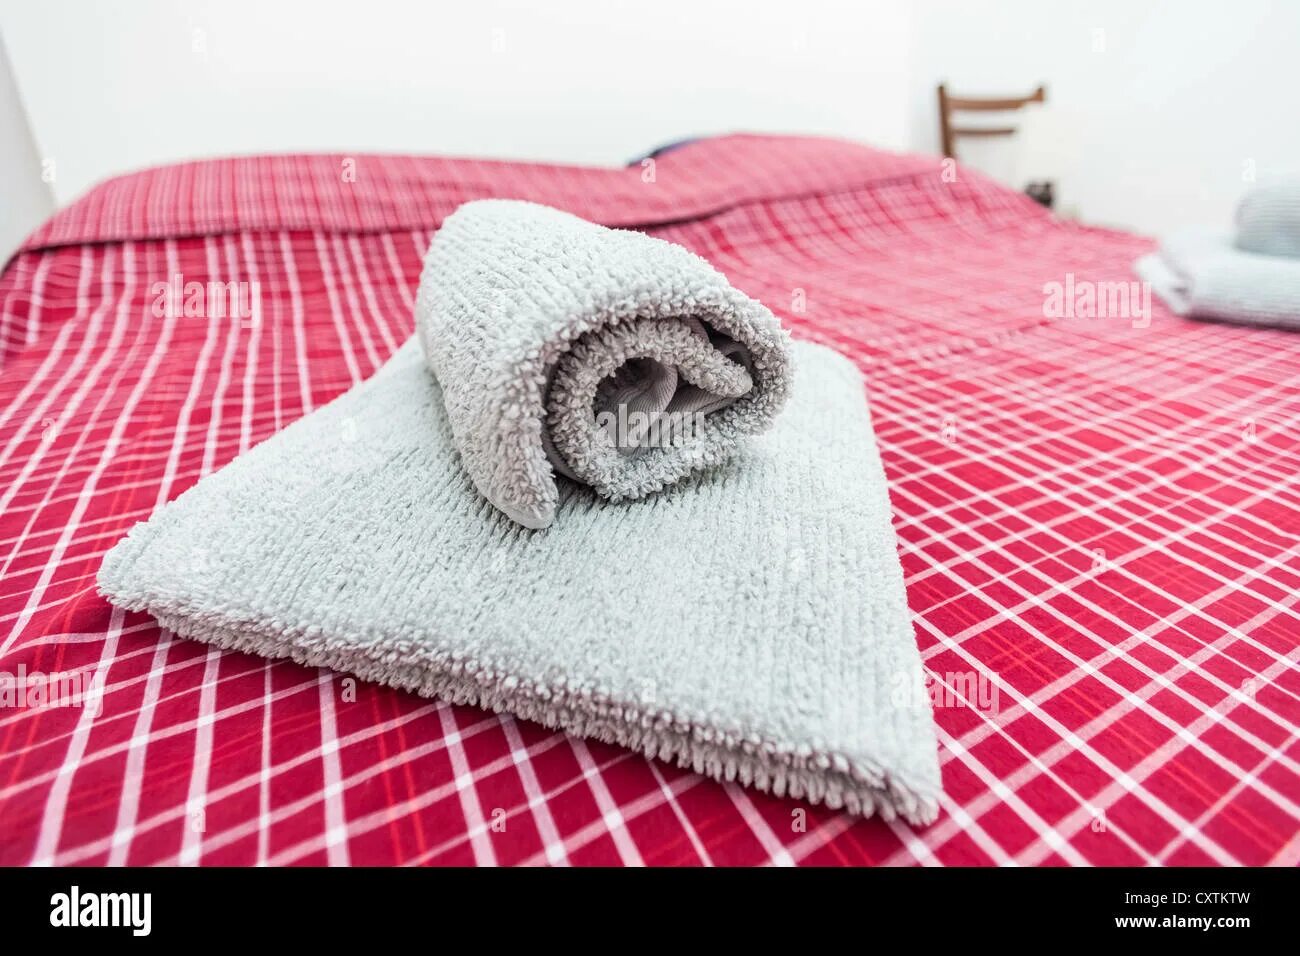 Полотенце на кровати. Полотенца на кровати. Сложенные полотенца на кровати. Красиво уложенные полотенца. Укладка полотенец в гостинице.